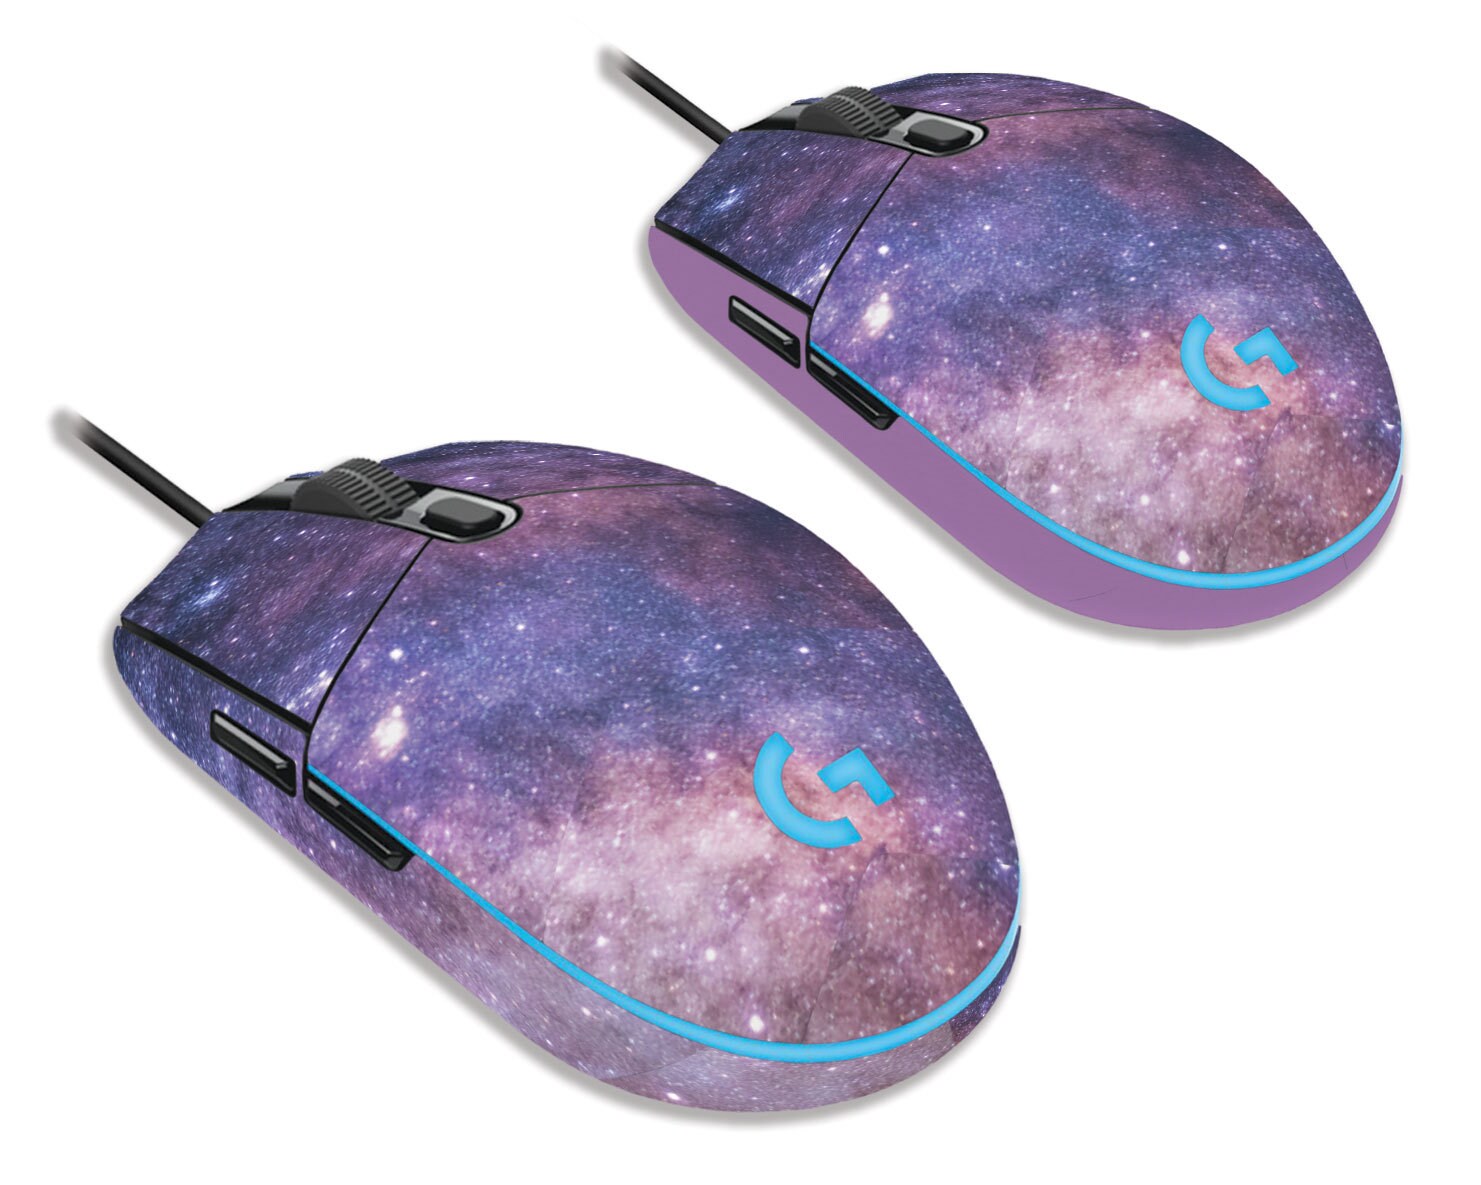 Мышь 80. Logitech g203. Logitech g203 Prodigy. Фиолетовая игровая мышь. Samsung Galaxy Mouse.